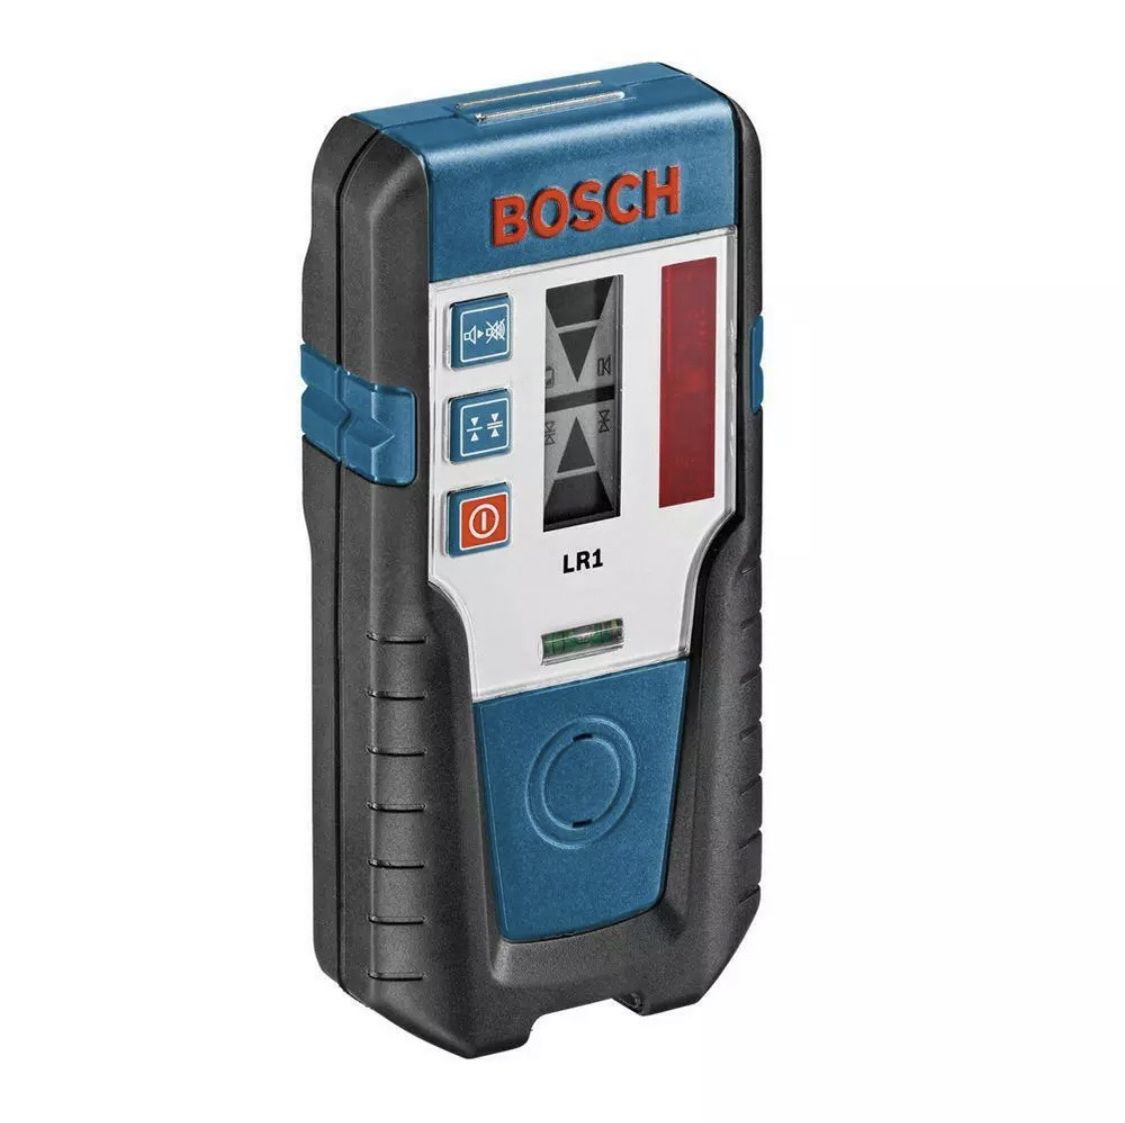 Bosch LR1 Red Laser Receiver